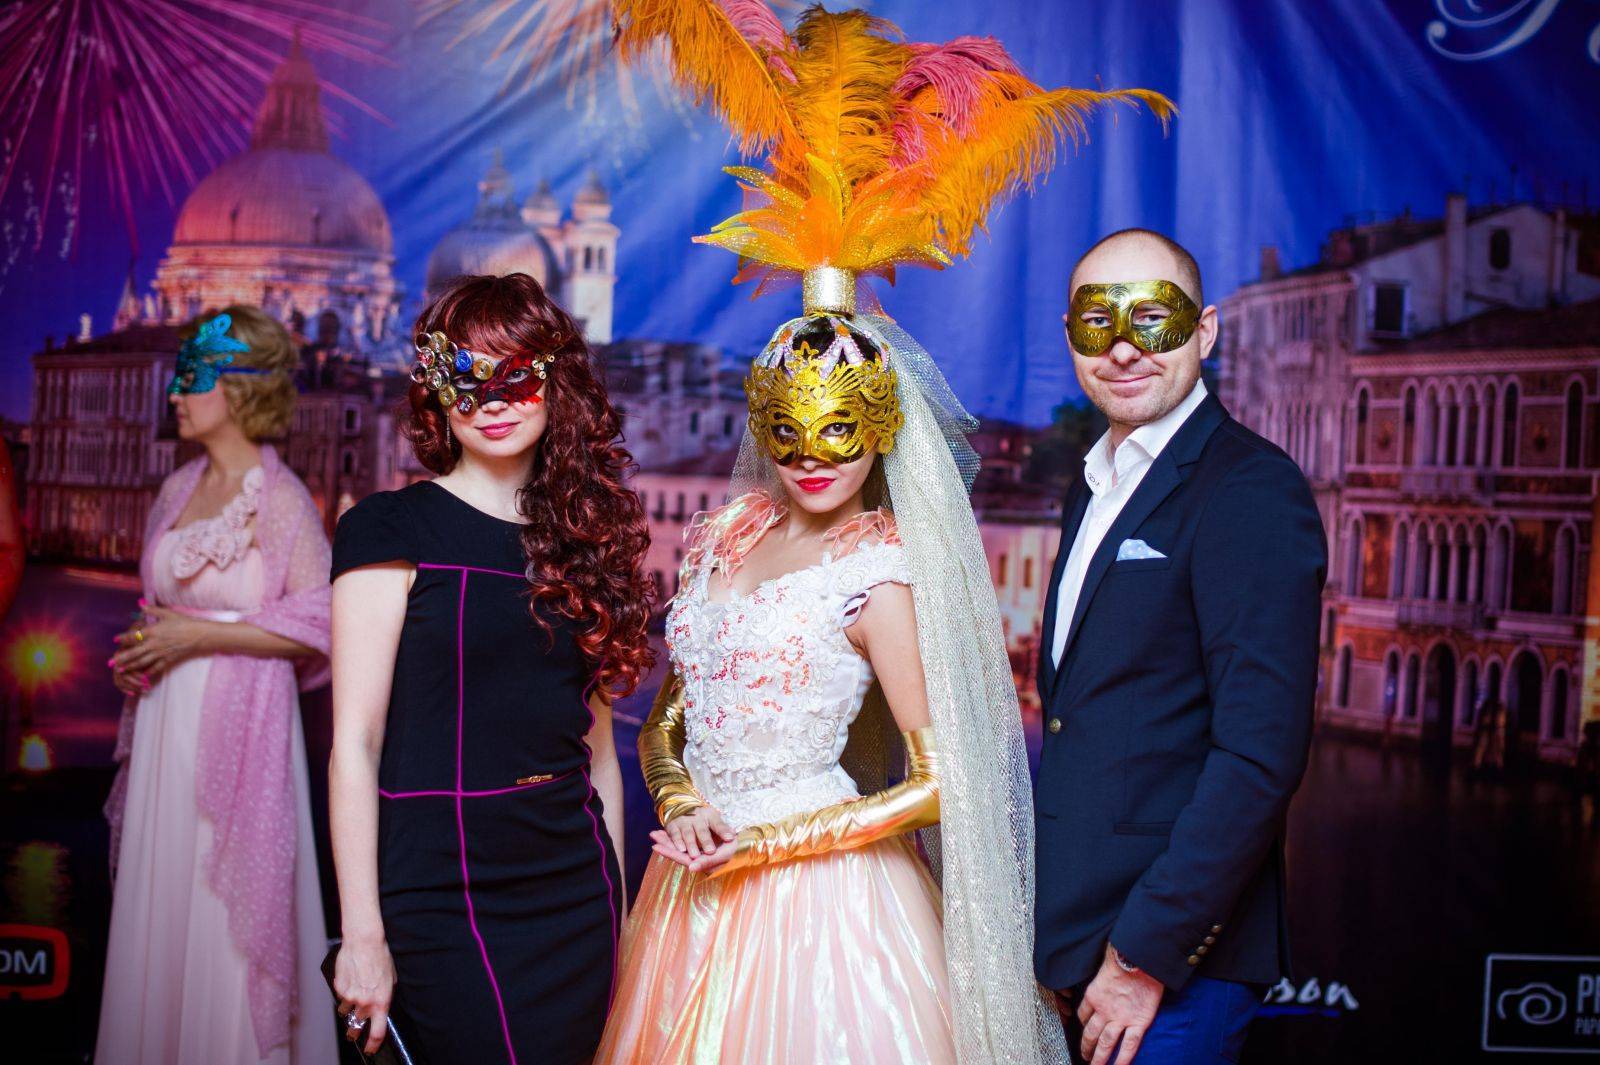 Бал-маскарад - masquerade ball - dev.abcdef.wiki